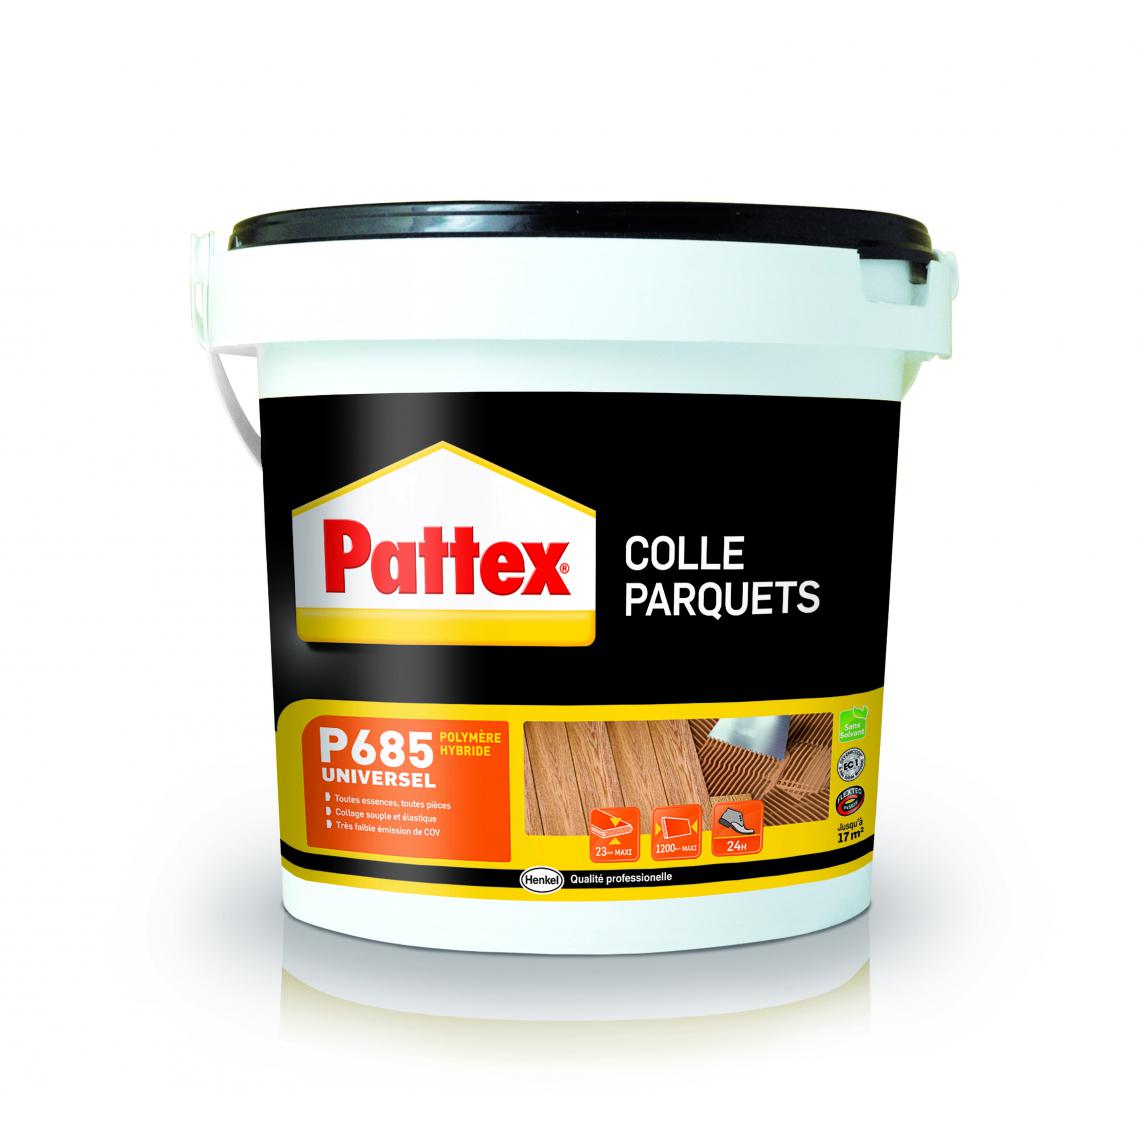 Pattex - Colle parquet élastique P685 PATTEX - seau de 7 kg - 990717 - Colle & adhésif